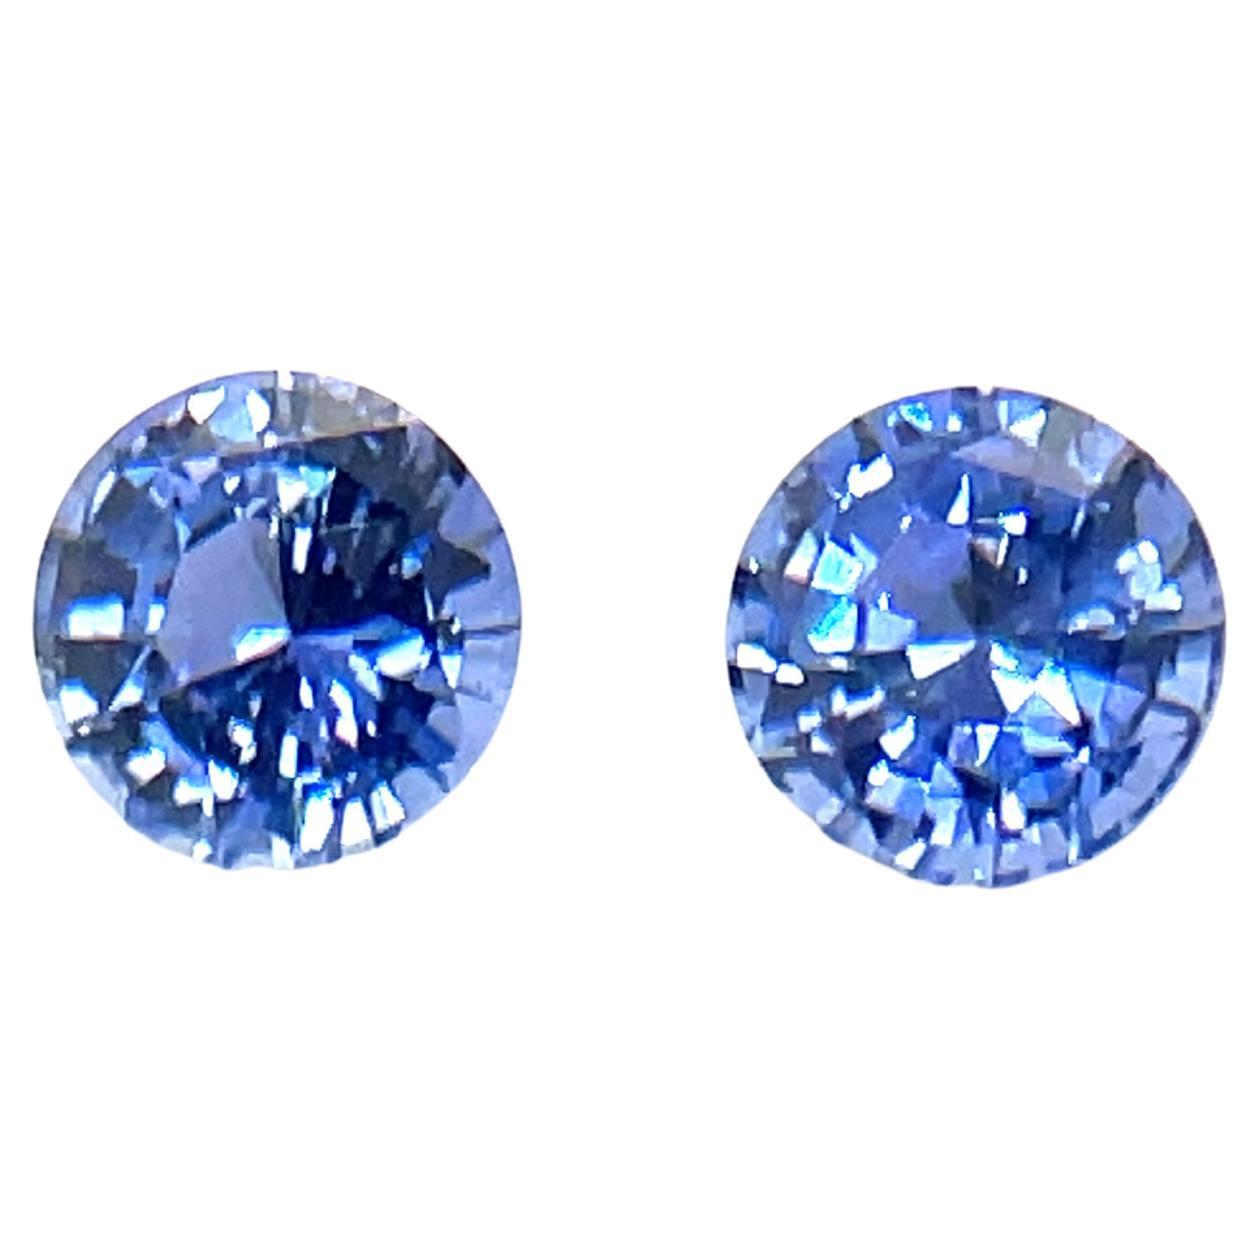 2 natürliche runde blaue Saphire mit Diamantschliff 1,21 kt